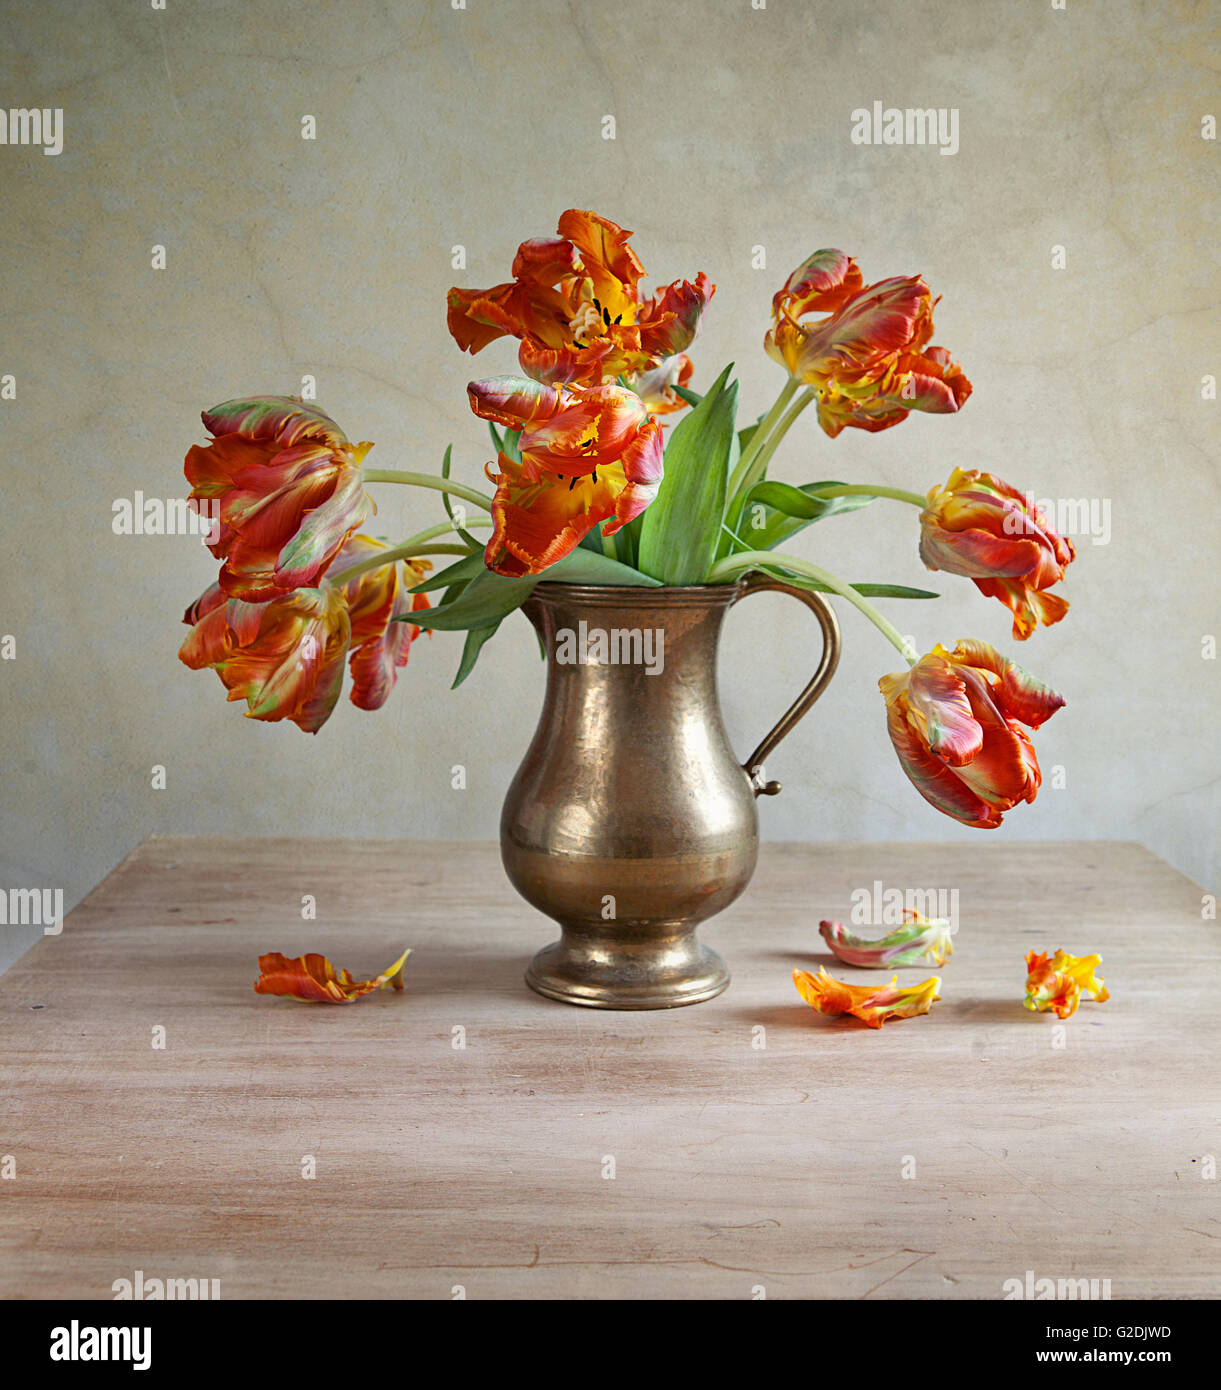 Orange-ornementale tulipes jaunes dans une antique metal verseuse à pétales tombés sur la vieille table en bois Banque D'Images